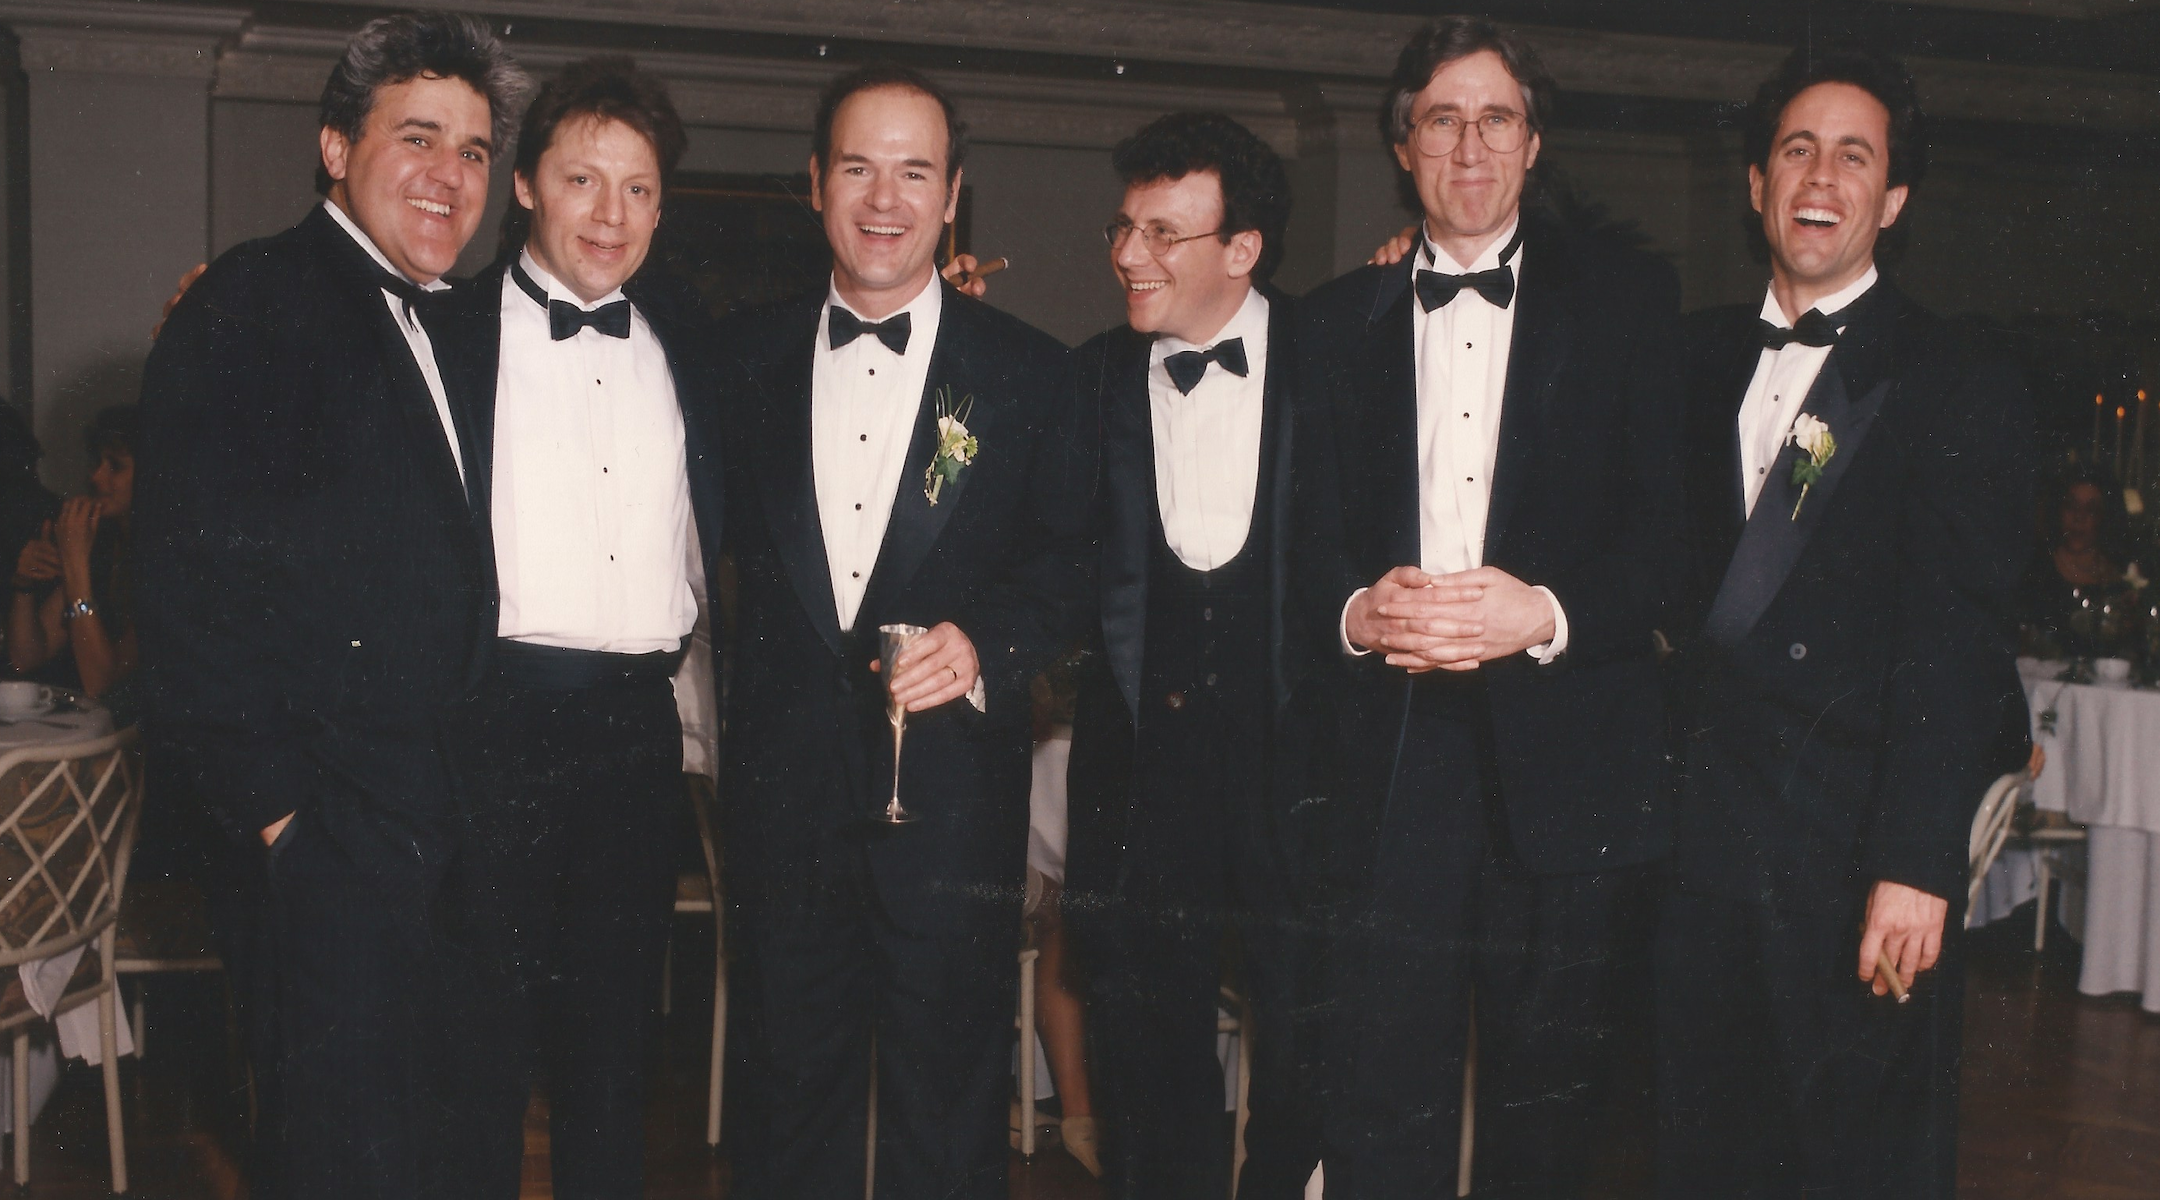 From left: Jay Leno, Mark Schiff, Larry Miller, Paul Reiser, Jimmy Brogan and Jerry Seinfeld at Miller’s wedding in 1993. (Courtesy of Schiff)